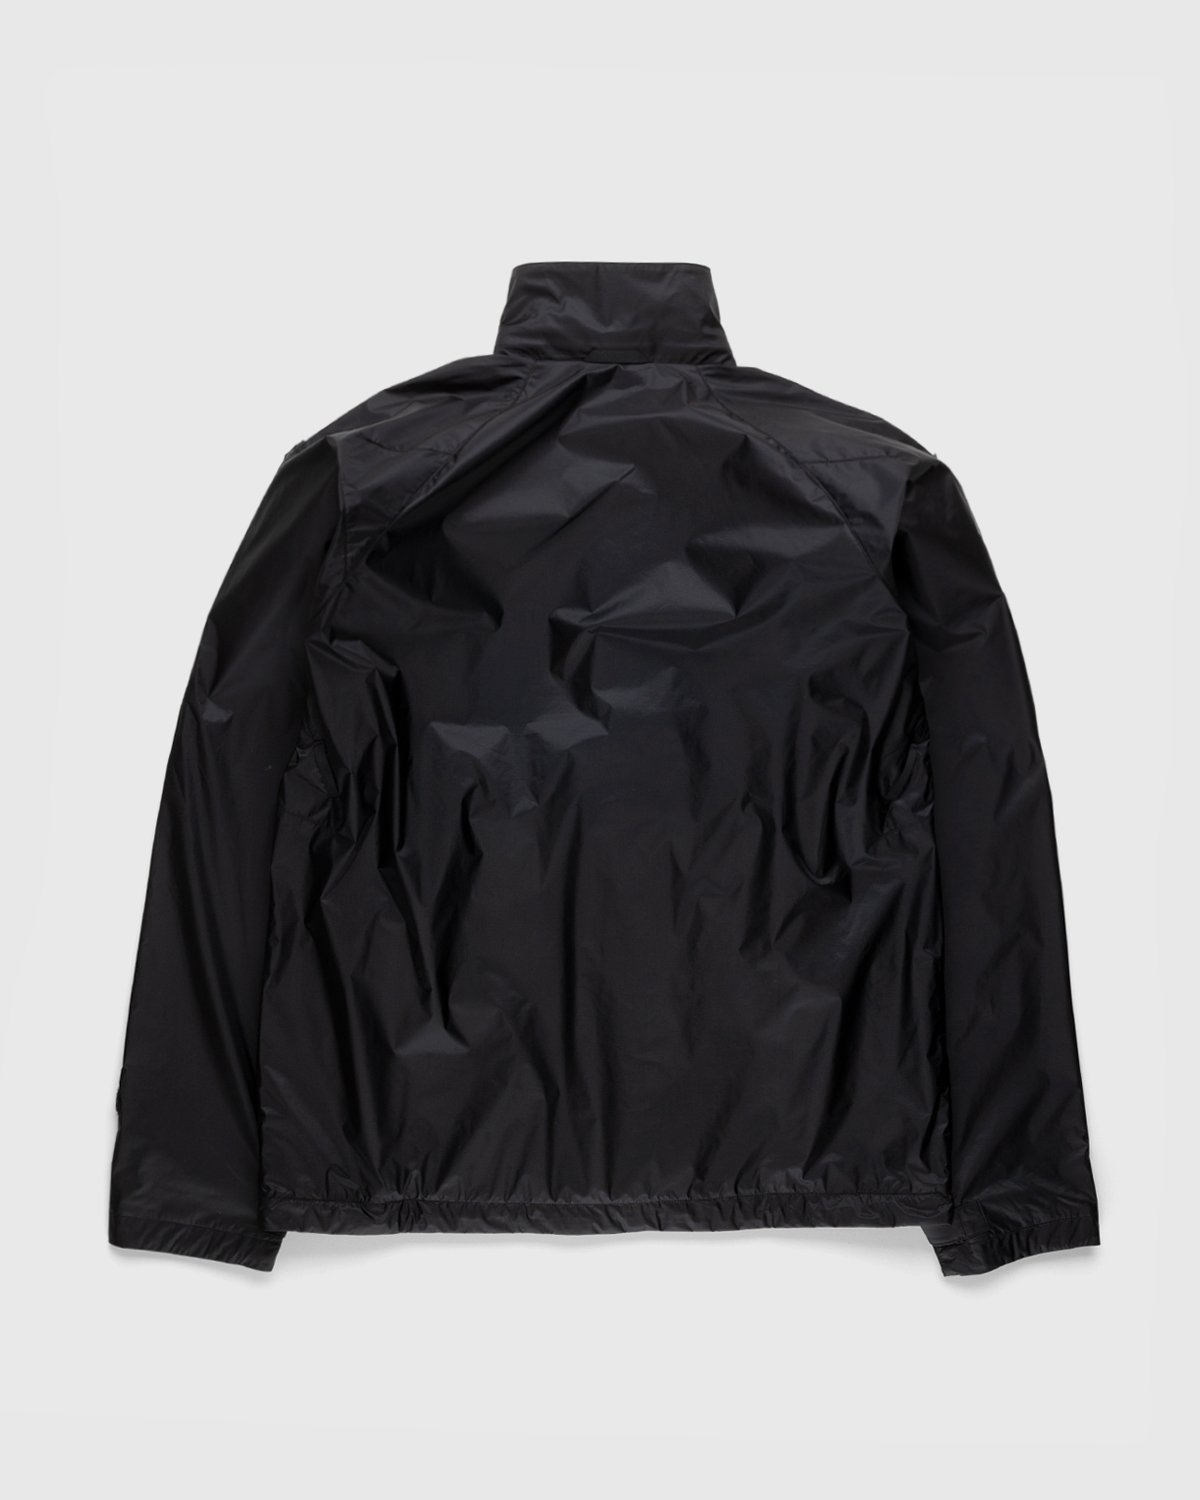 ACRONYM - J95-WS Jacket Black - Clothing - Black - Image 2